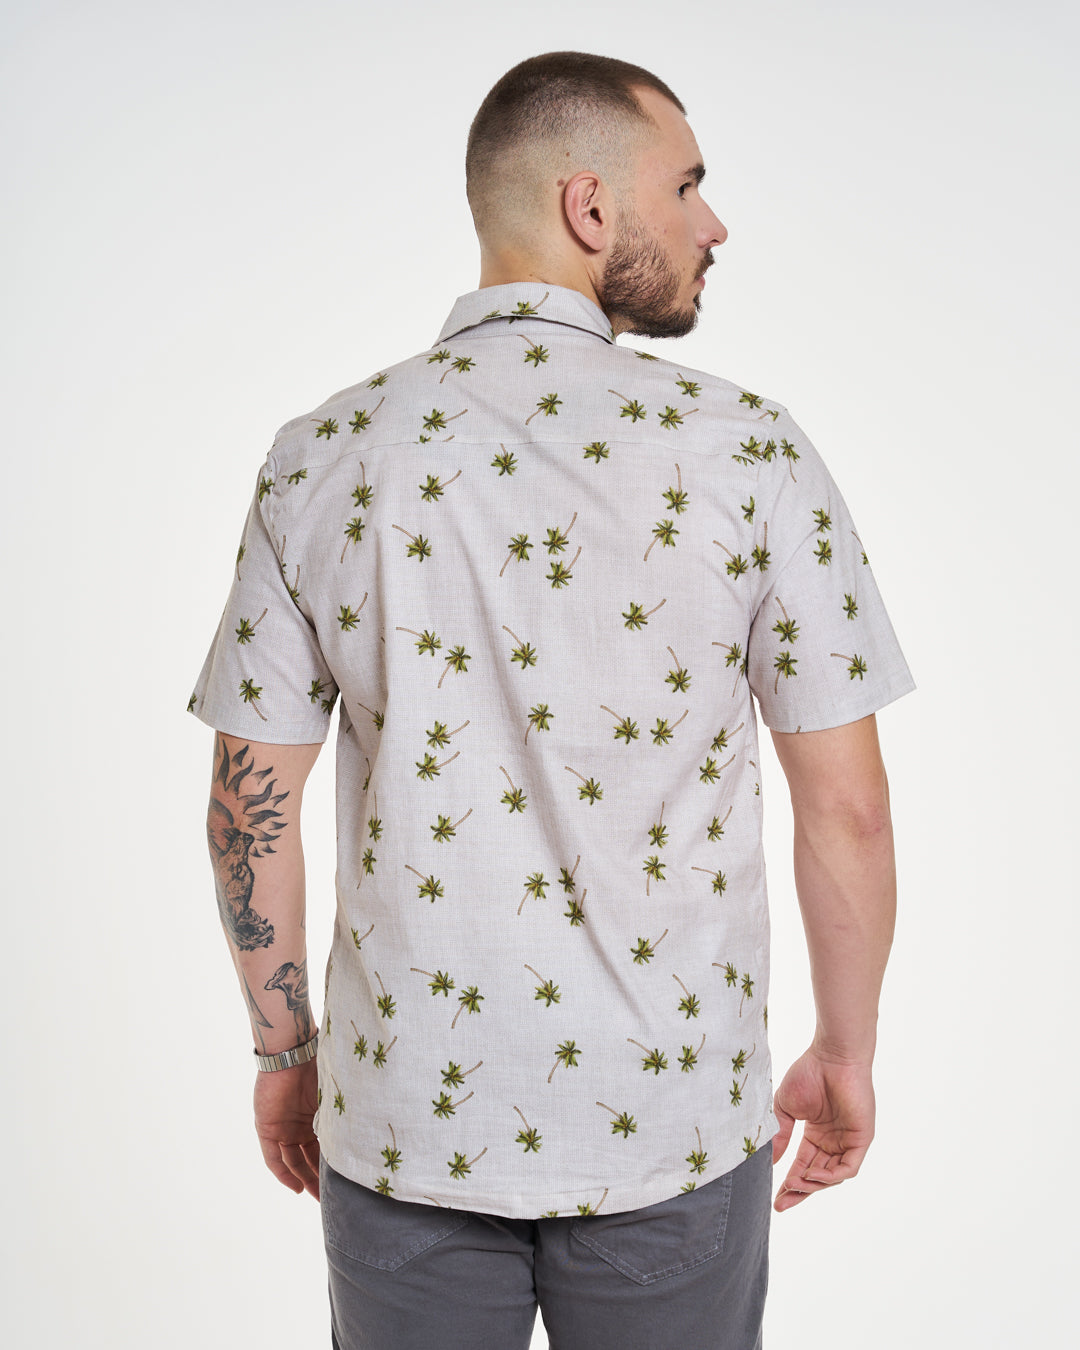 Casual Elastic Printed Shirt - Deserto